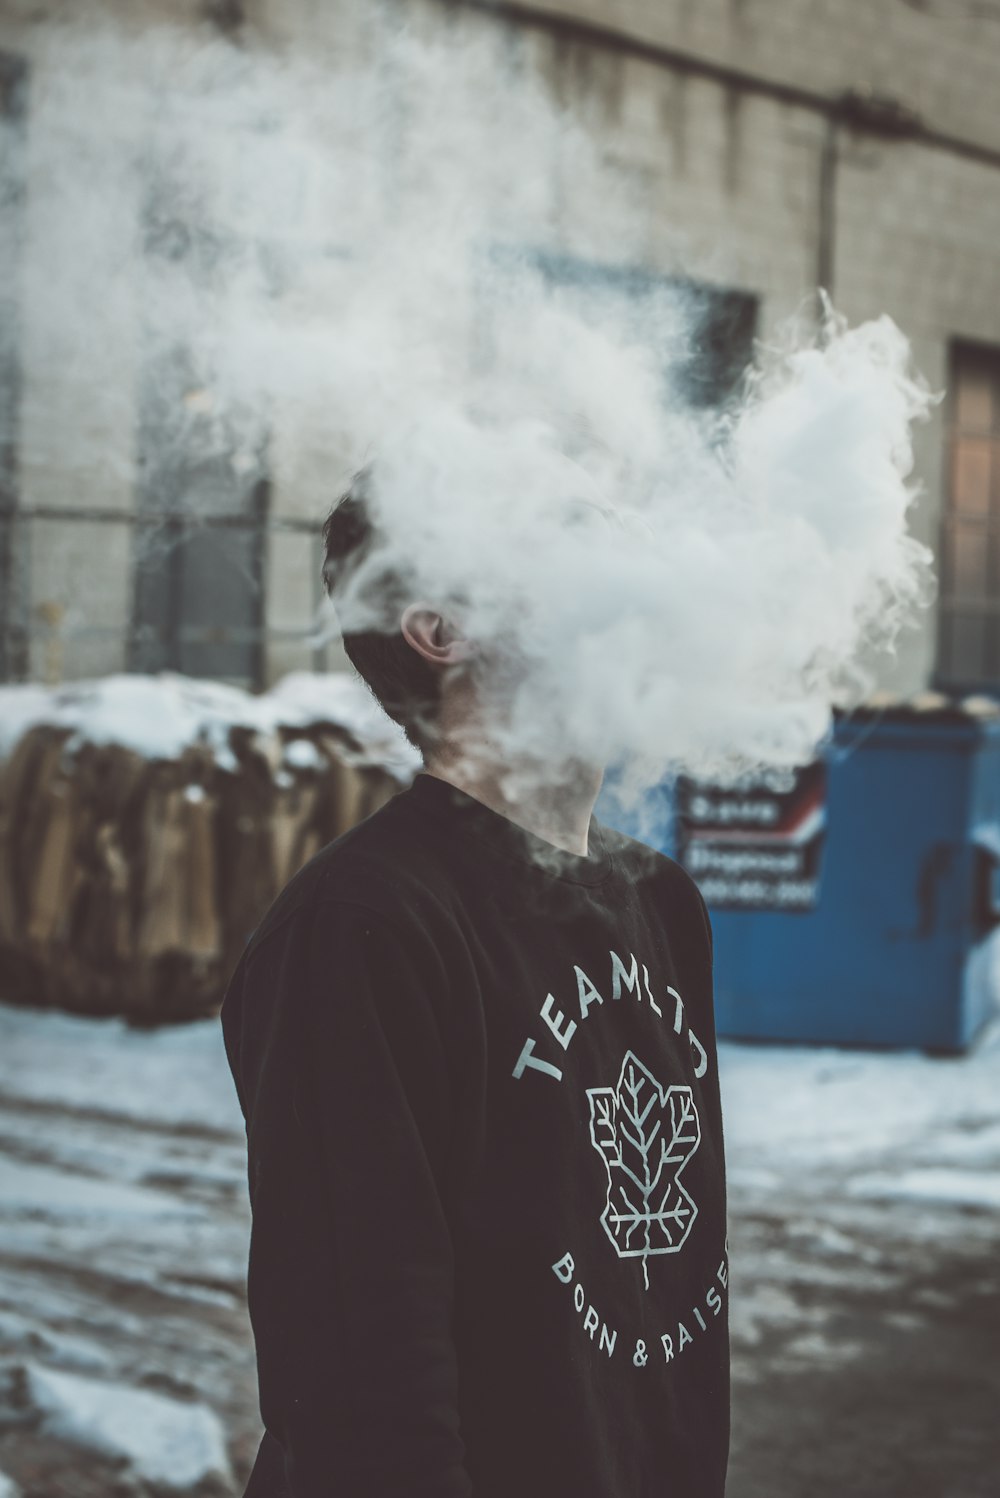 Un homme debout devant un immeuble avec un nuage de fumée sortant de